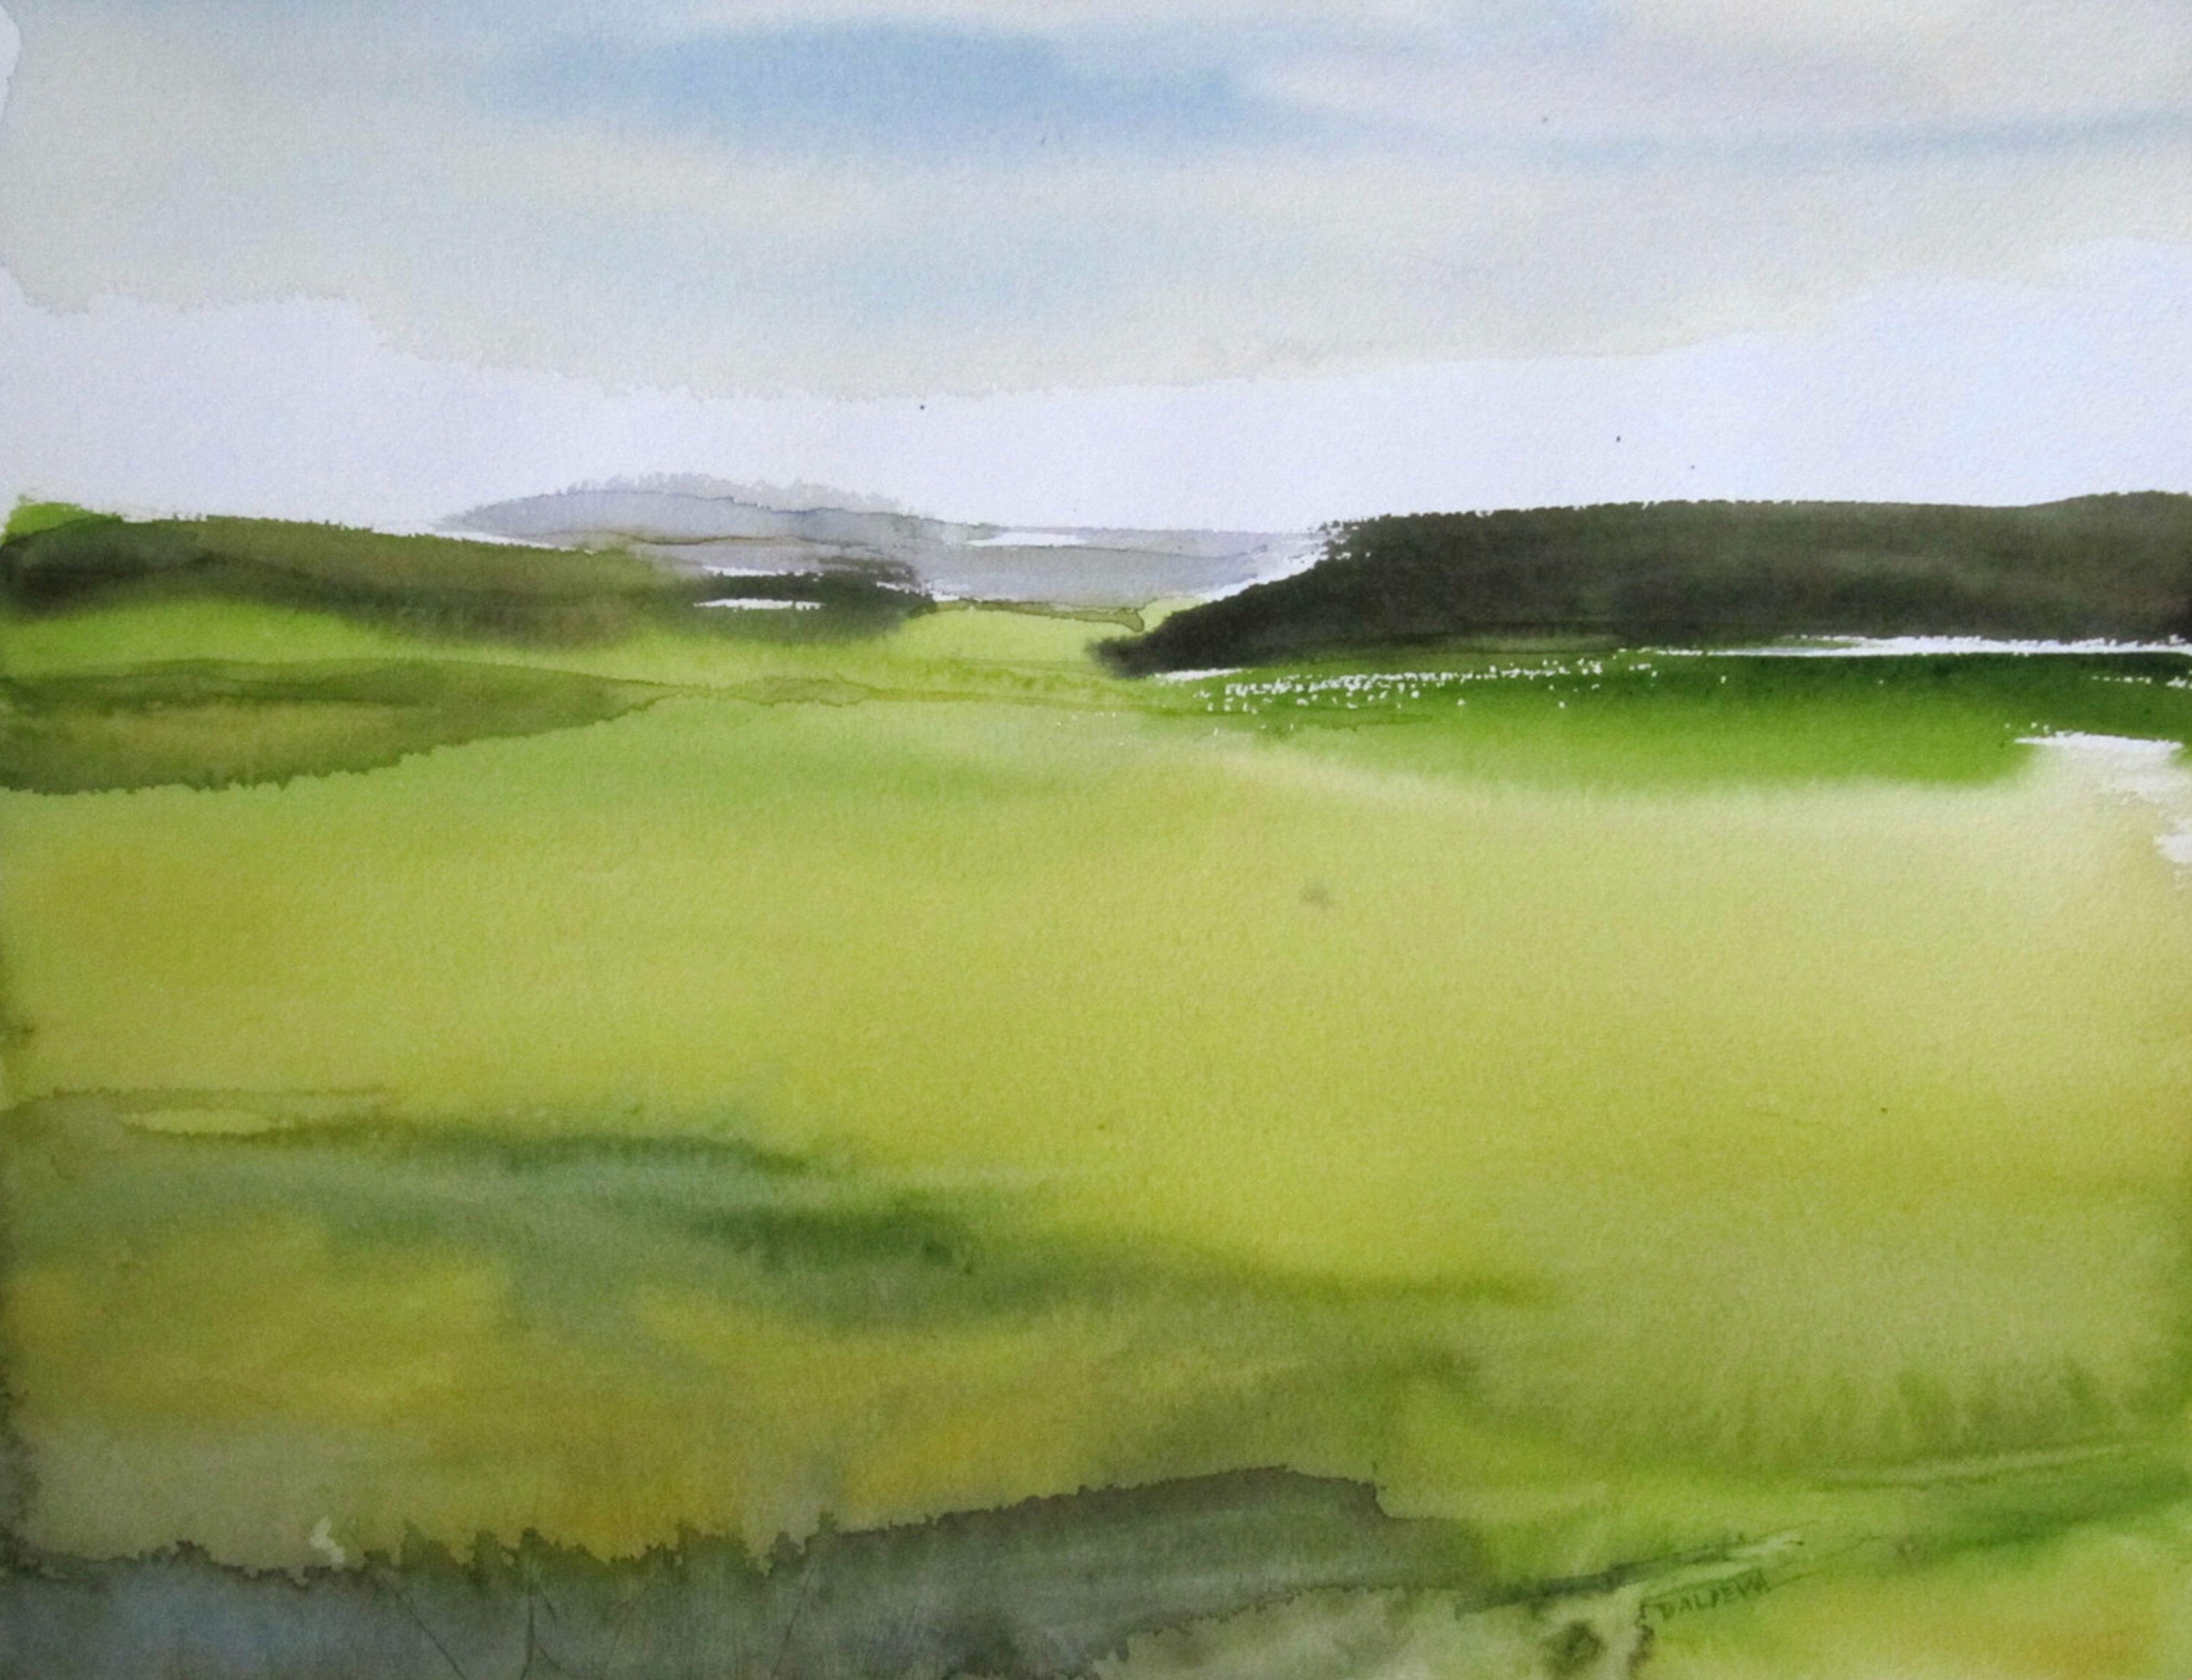 Plaine" de Sylvia Baldeva muestra un paisaje pintado a la acuarela, llanura, cielo, color predominantemente verde.